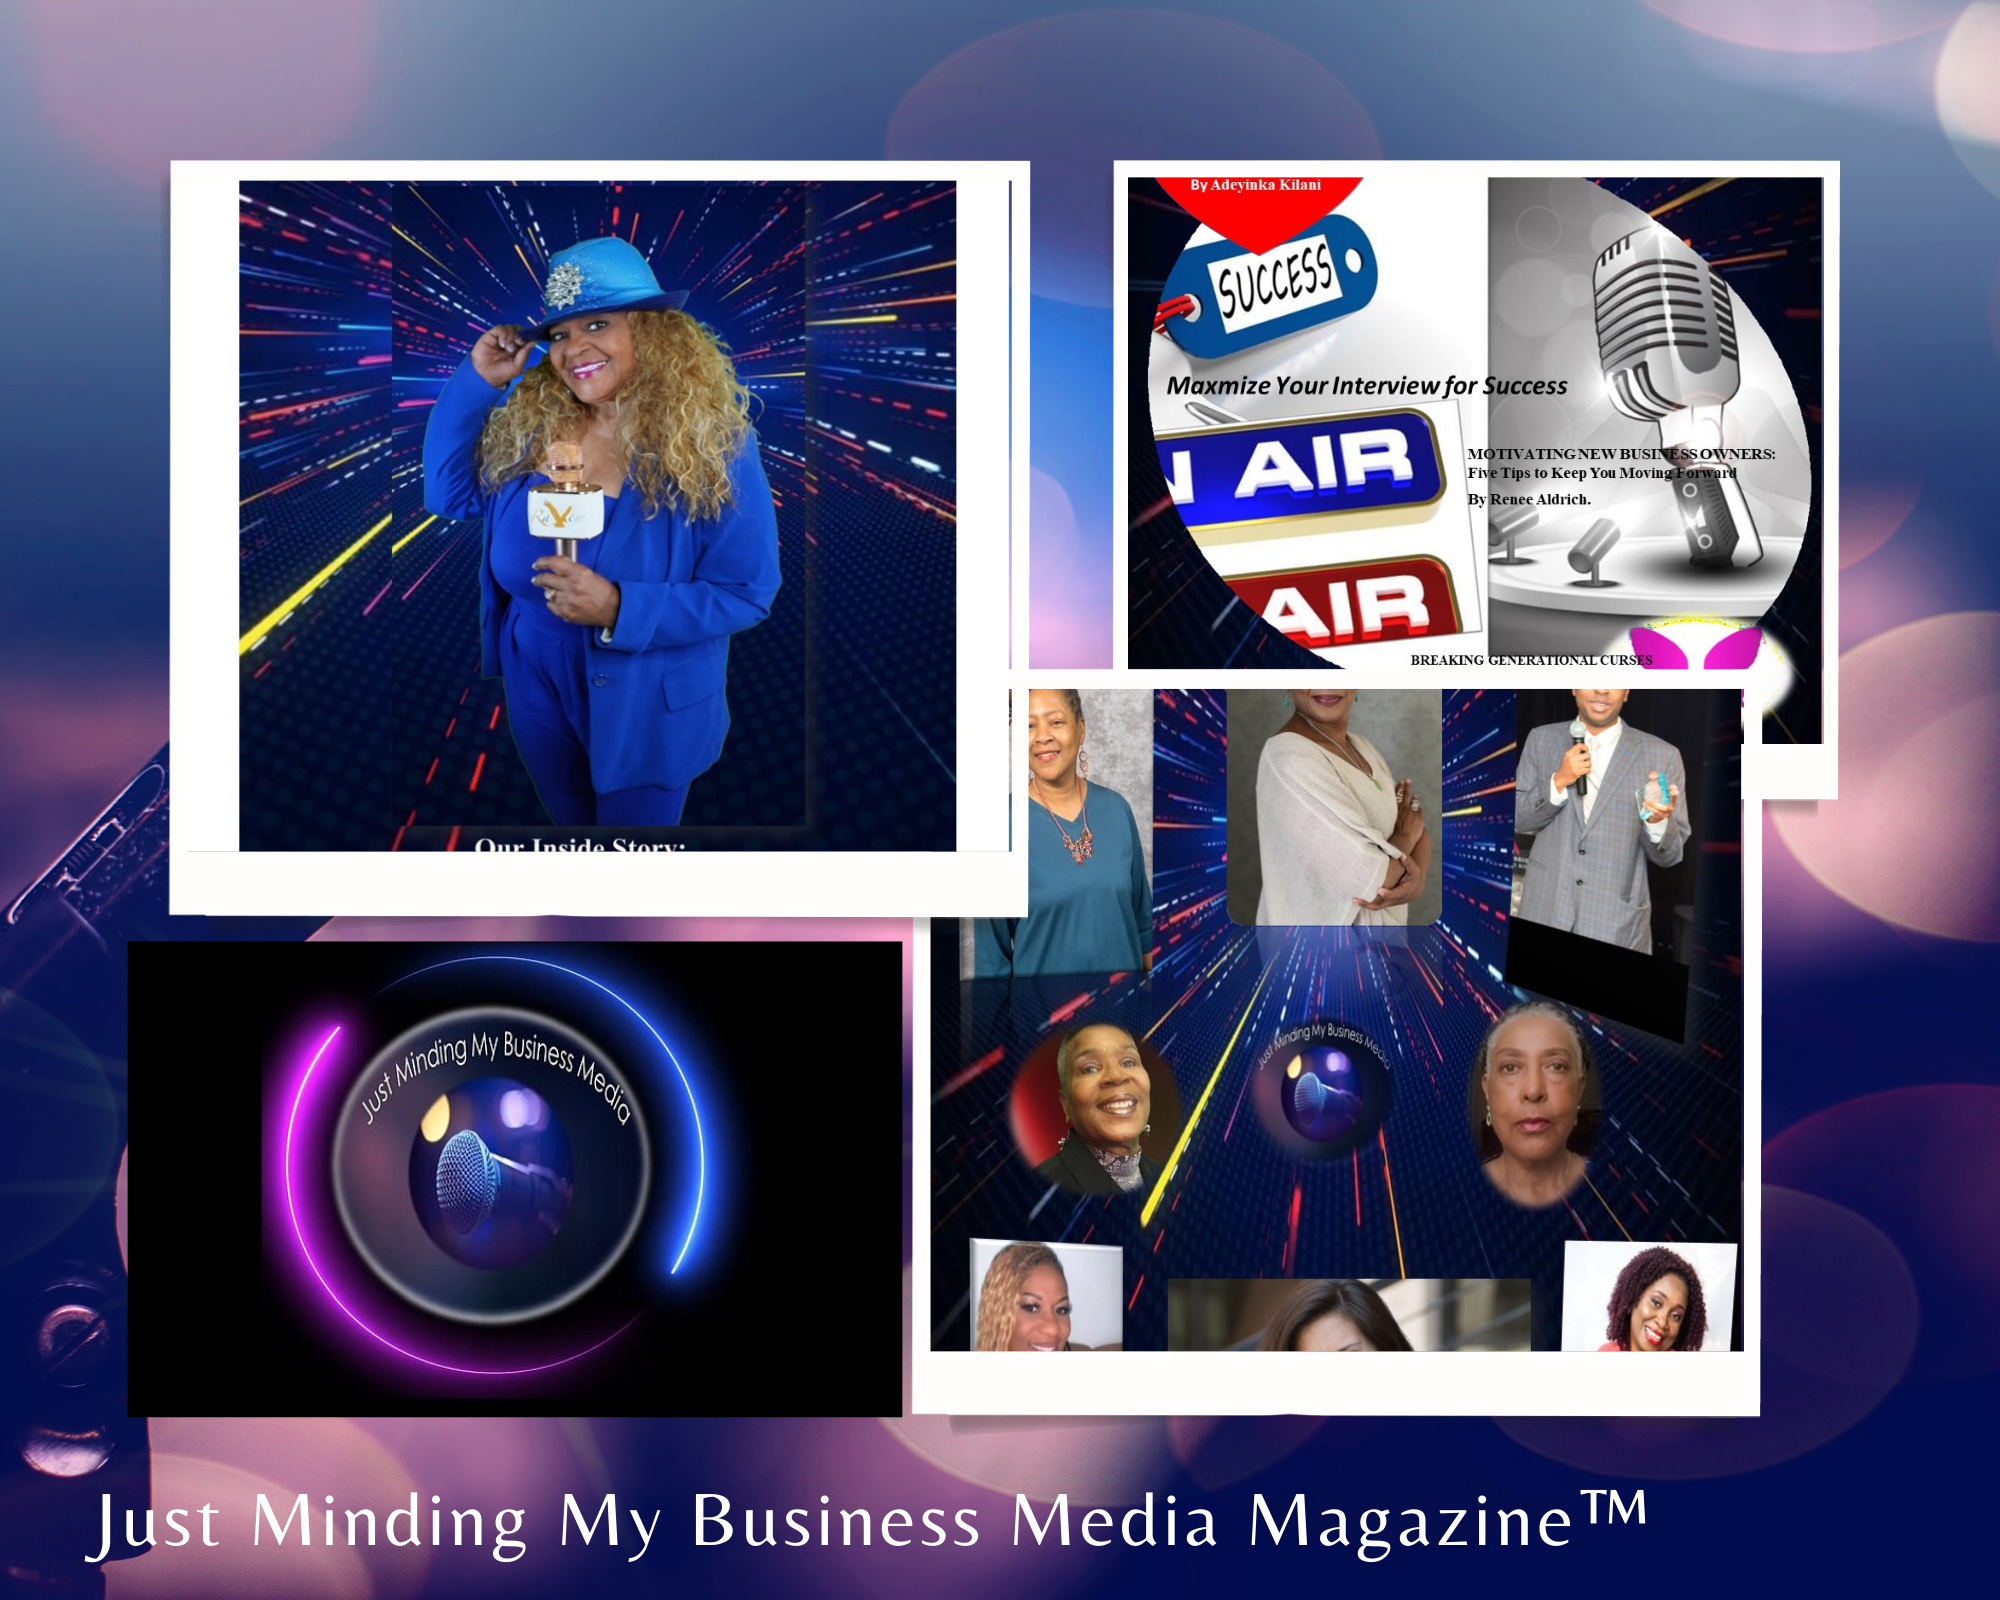 Just Minding My Business MediaMagazine